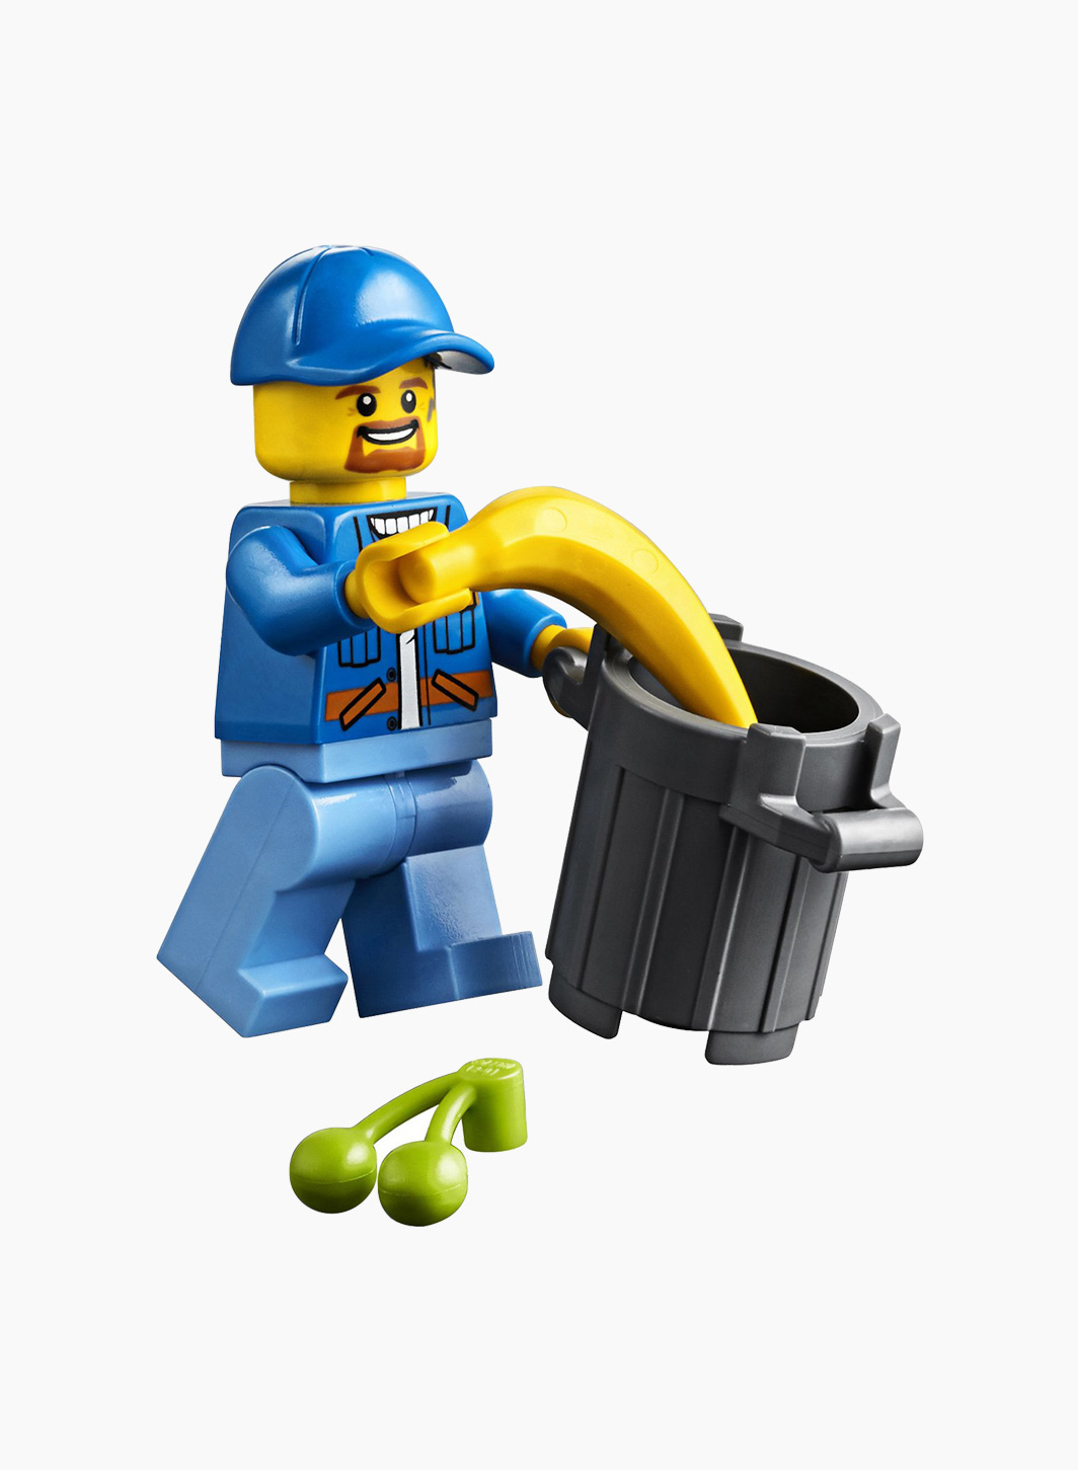 Lego City Конструктор Мусоровоз